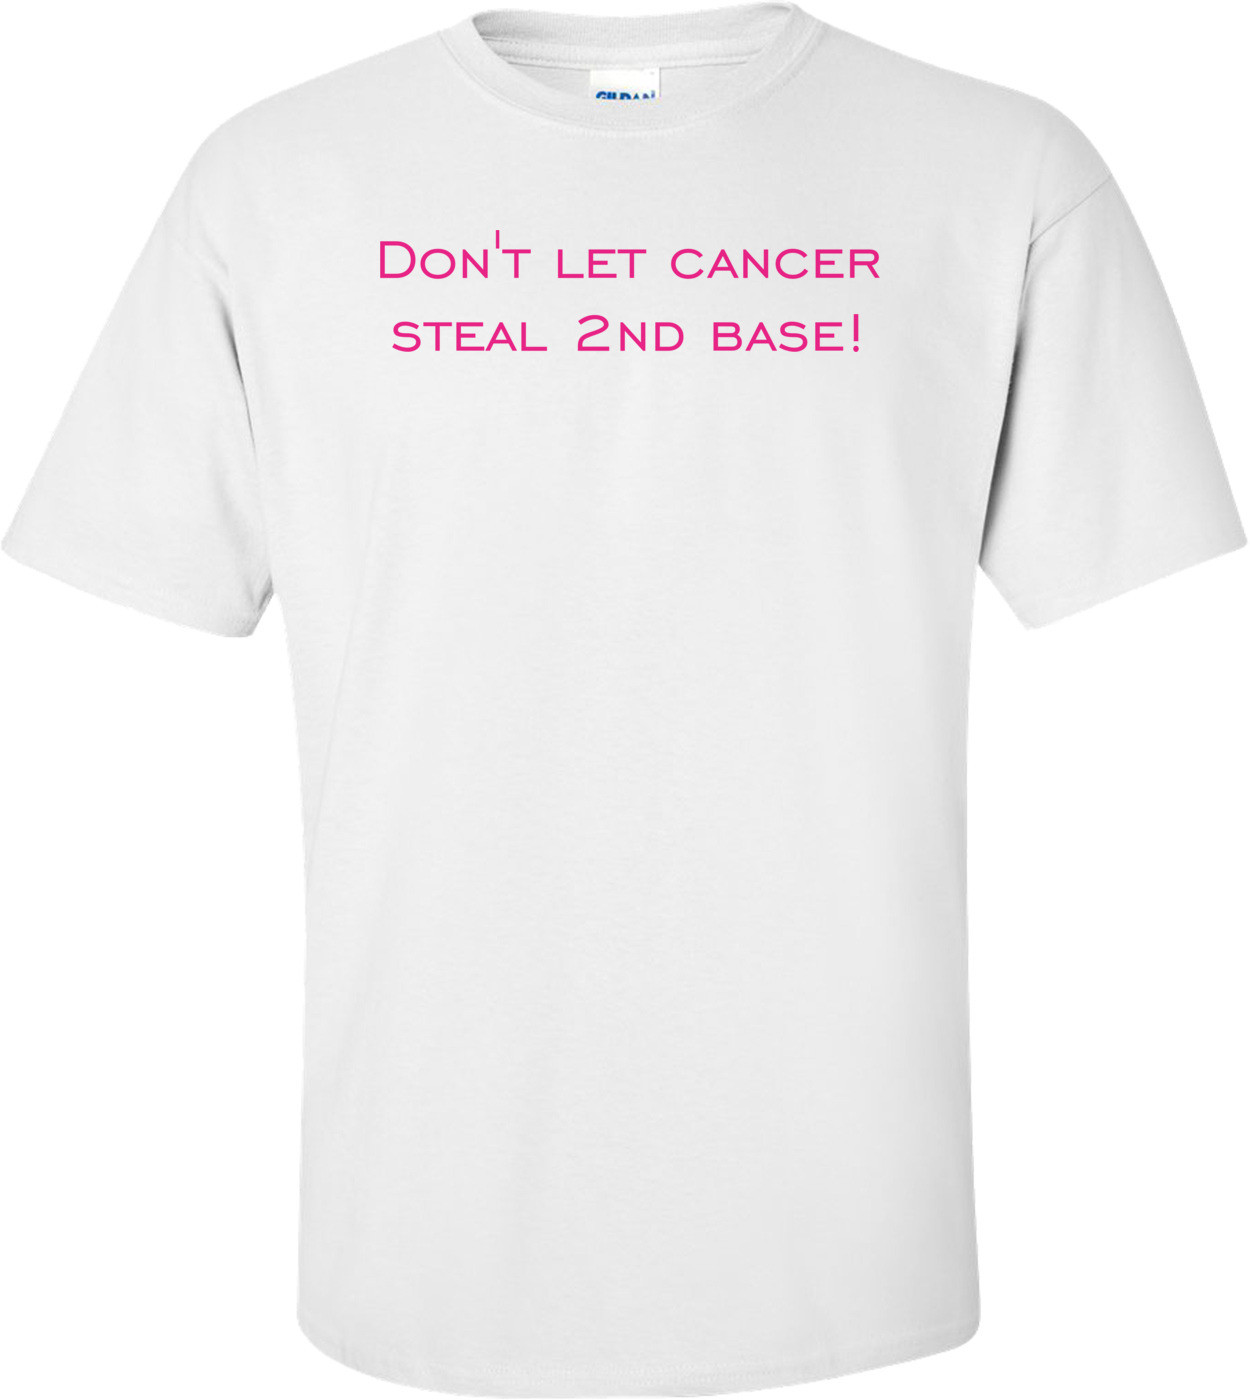 Don't let cancer steal 2nd base! Shirt